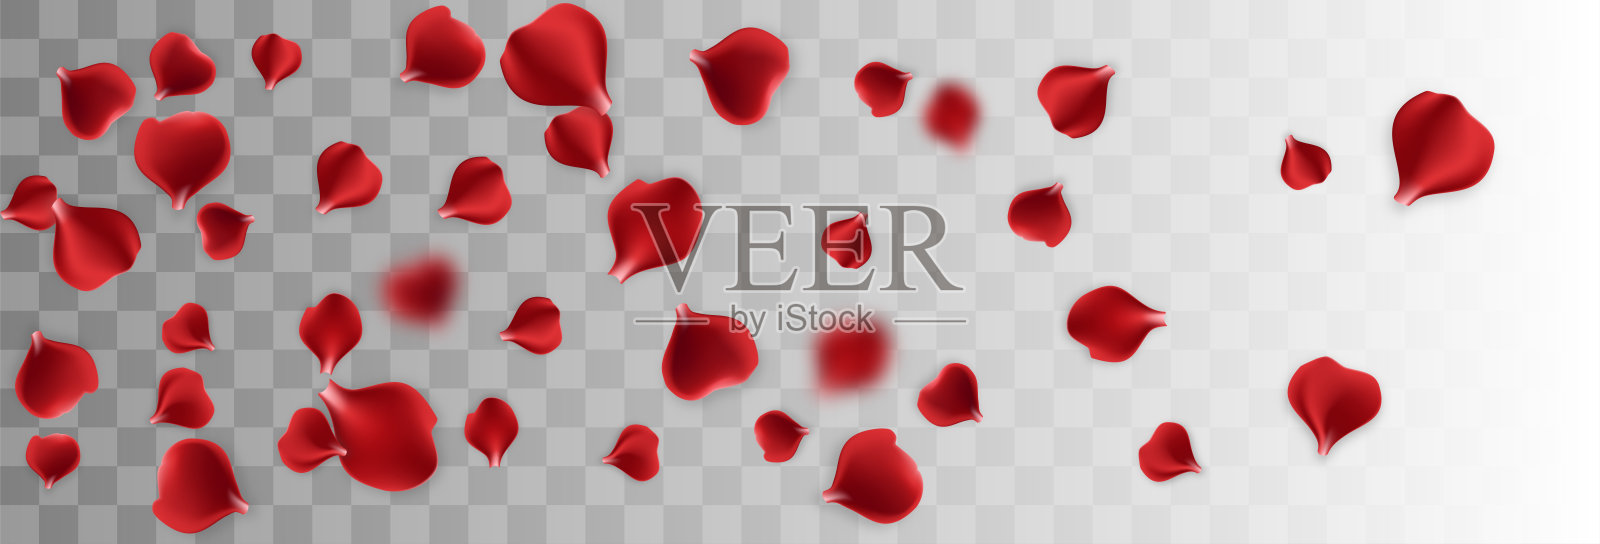 红色玫瑰花瓣透明背景设计元素图片